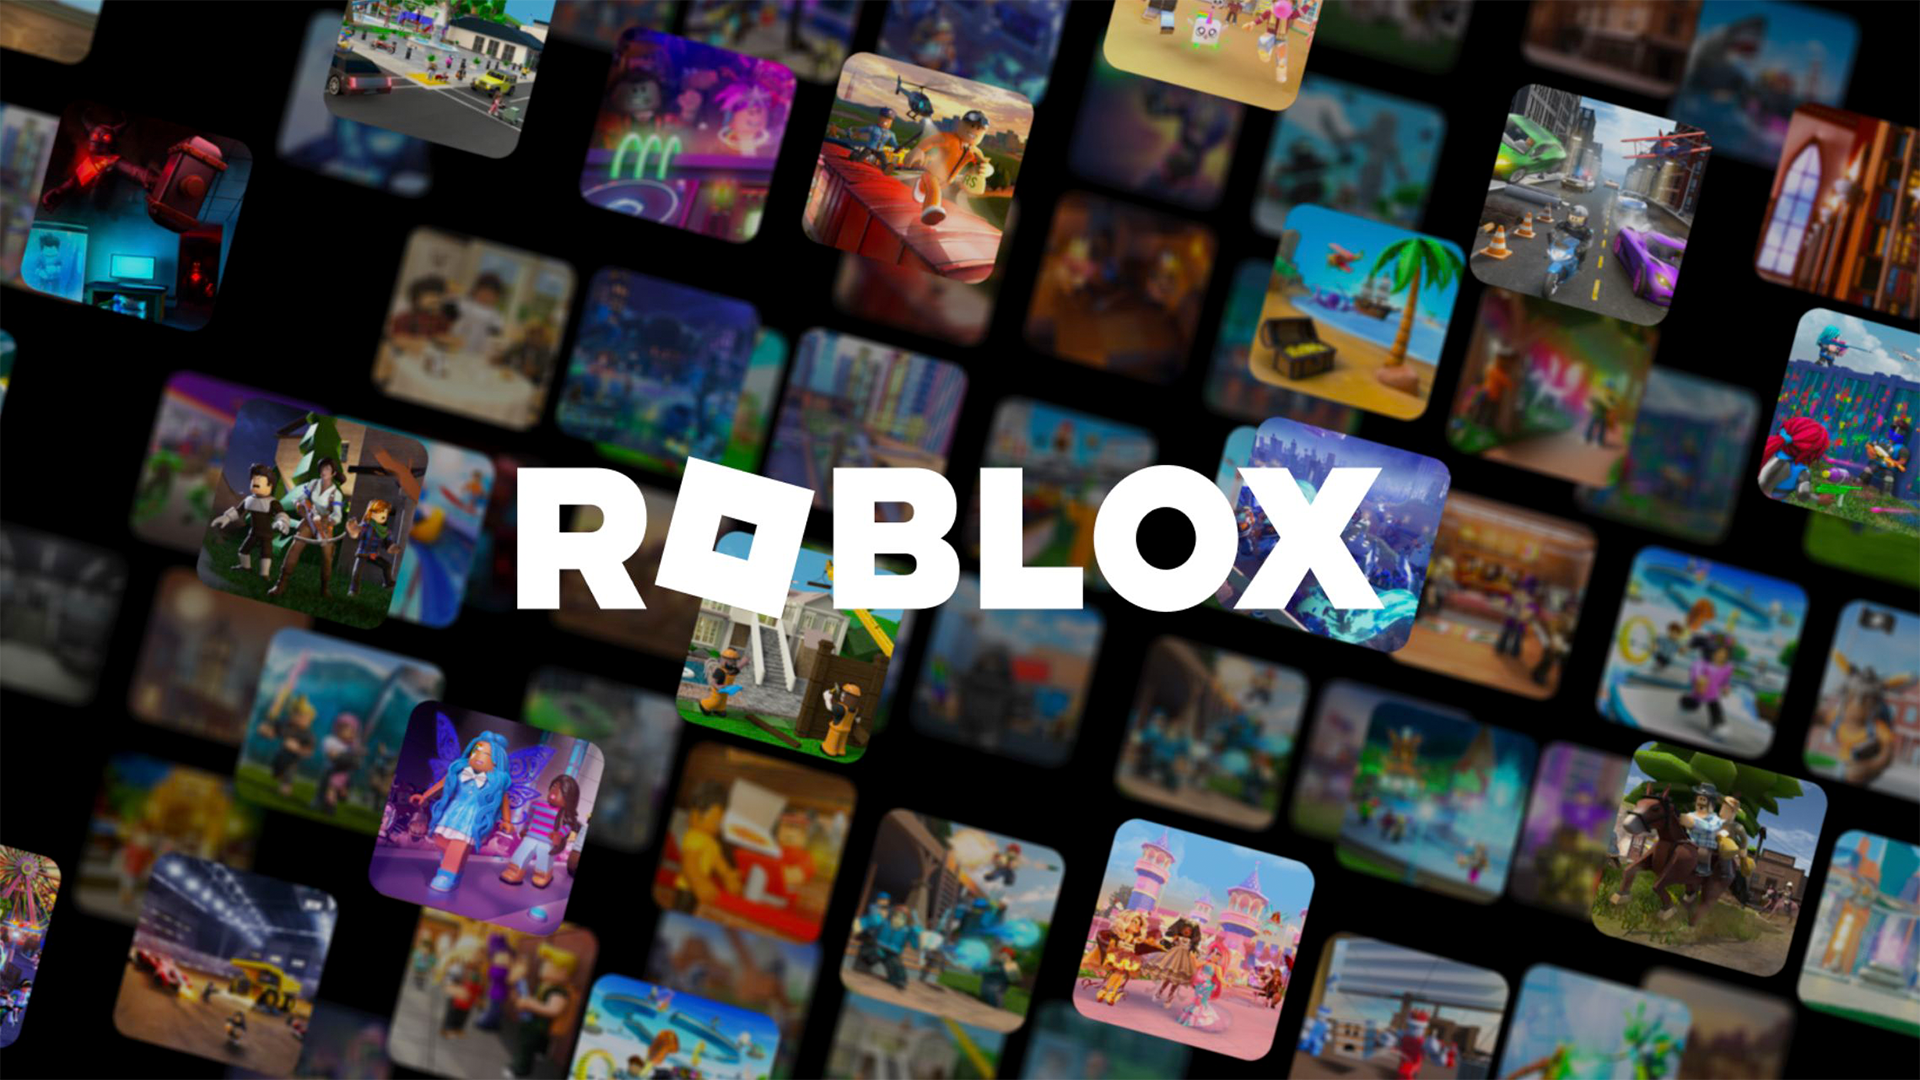 نقد بازی روبلاکس (Roblox) | جهان گیمرها